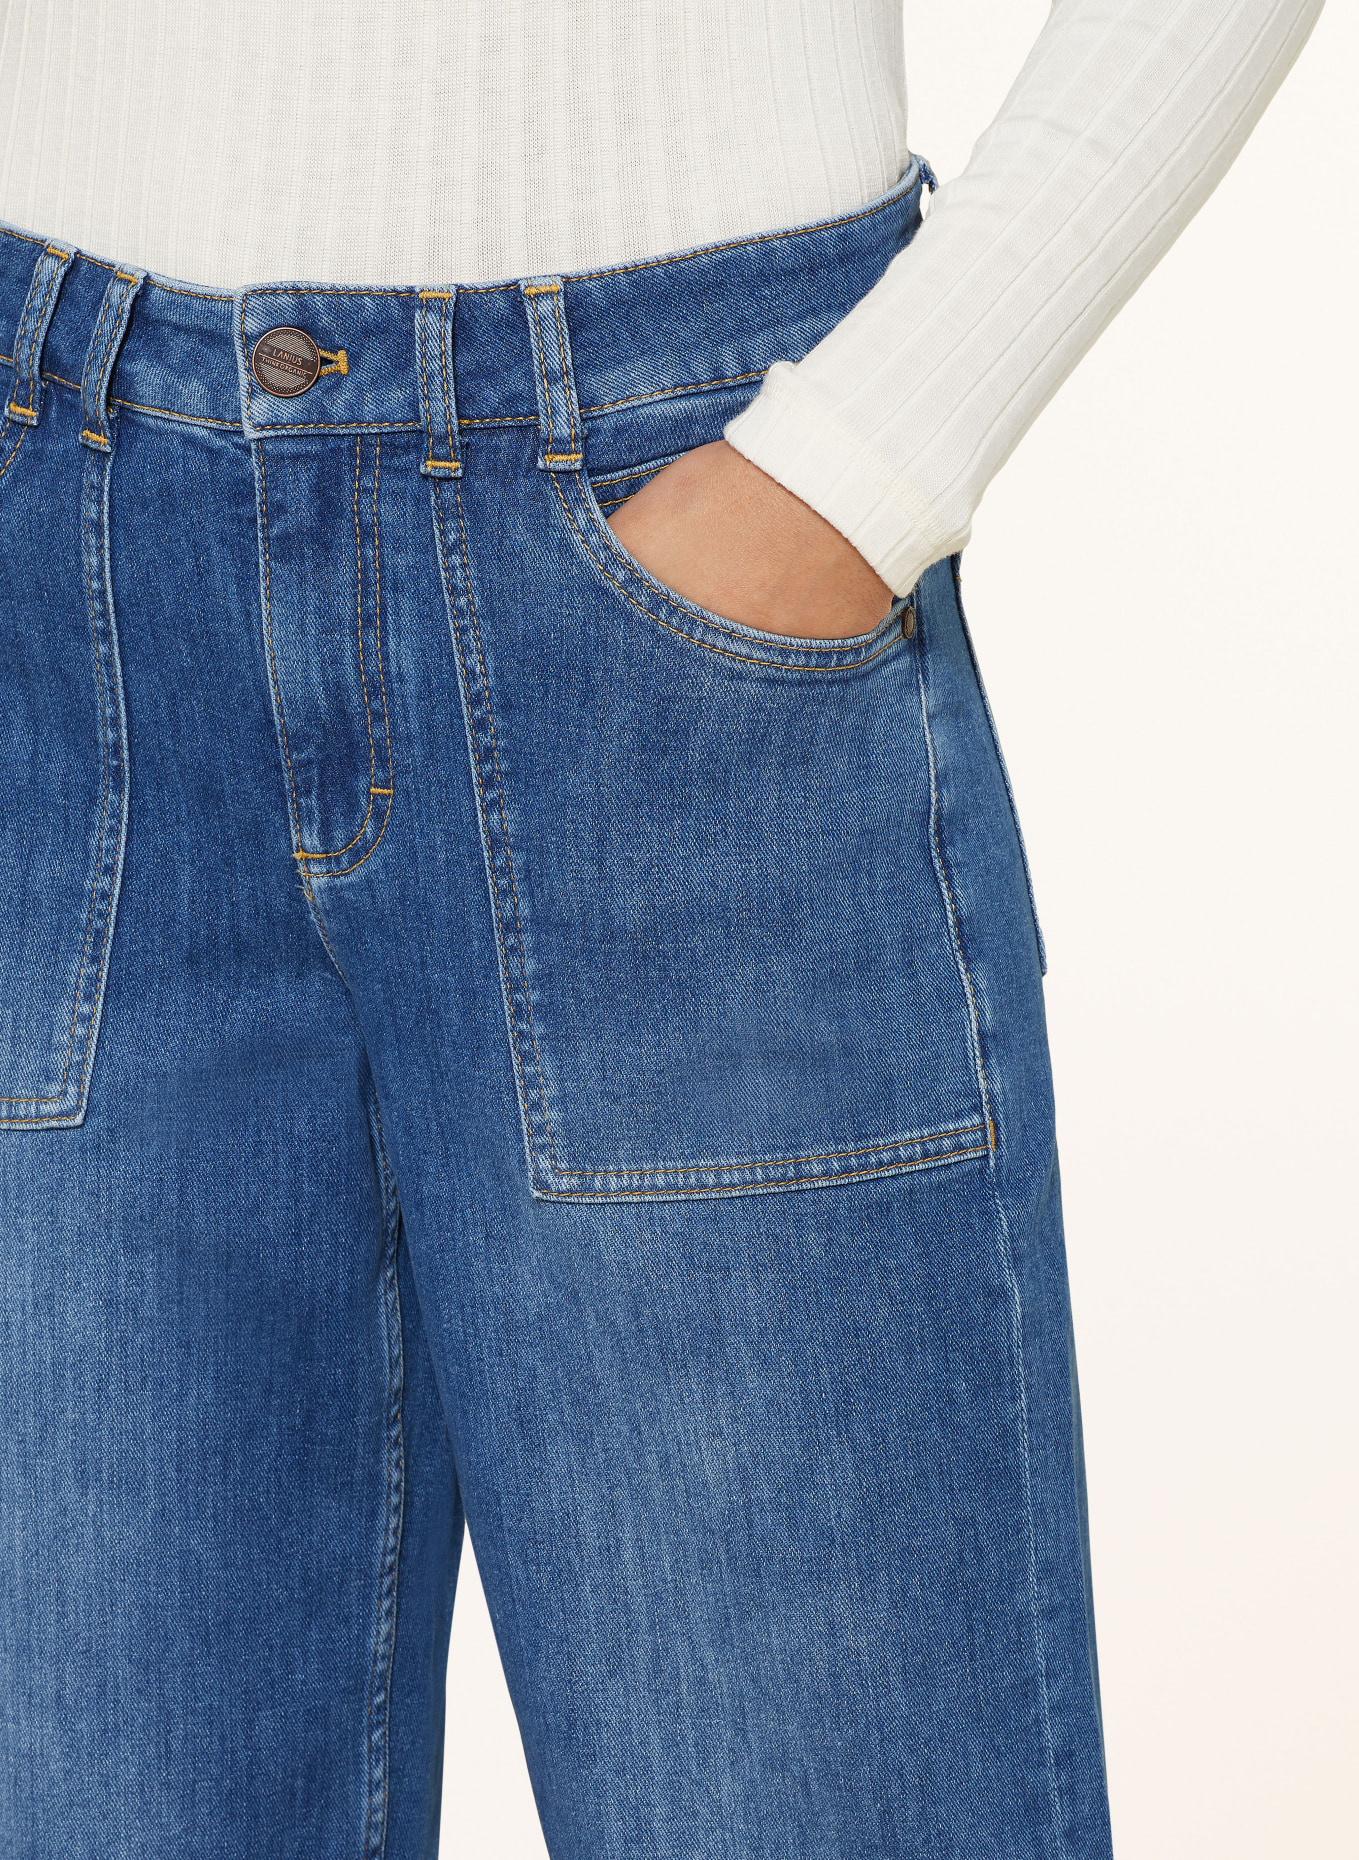 LANIUS Culotte jeans, Color: 577 mid blue denim (Image 5)